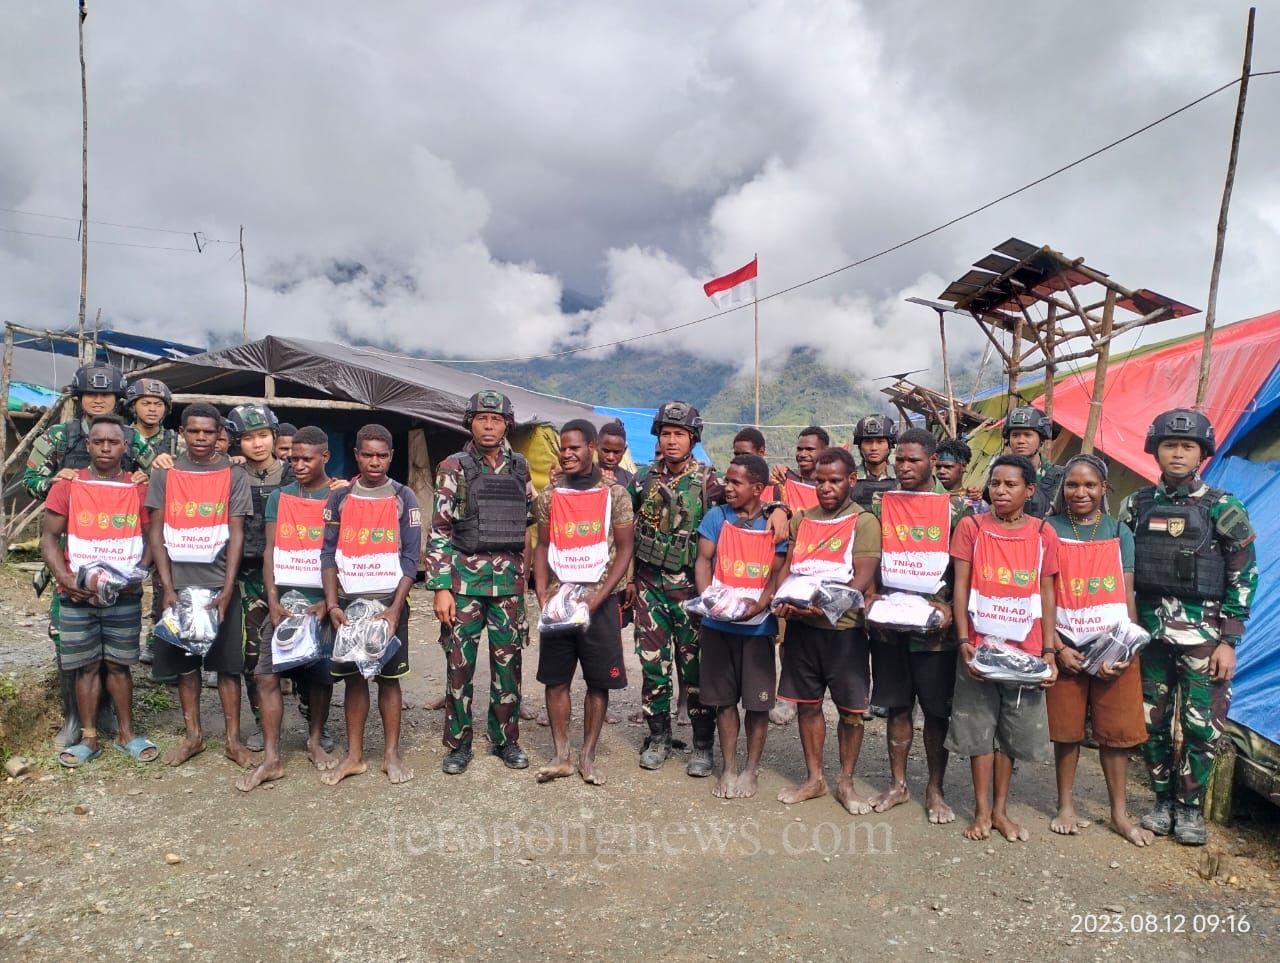 Satgas Mobile Raider 300 Berikan Perlengkapan Sekolah di Papua Menuju Masa Depan